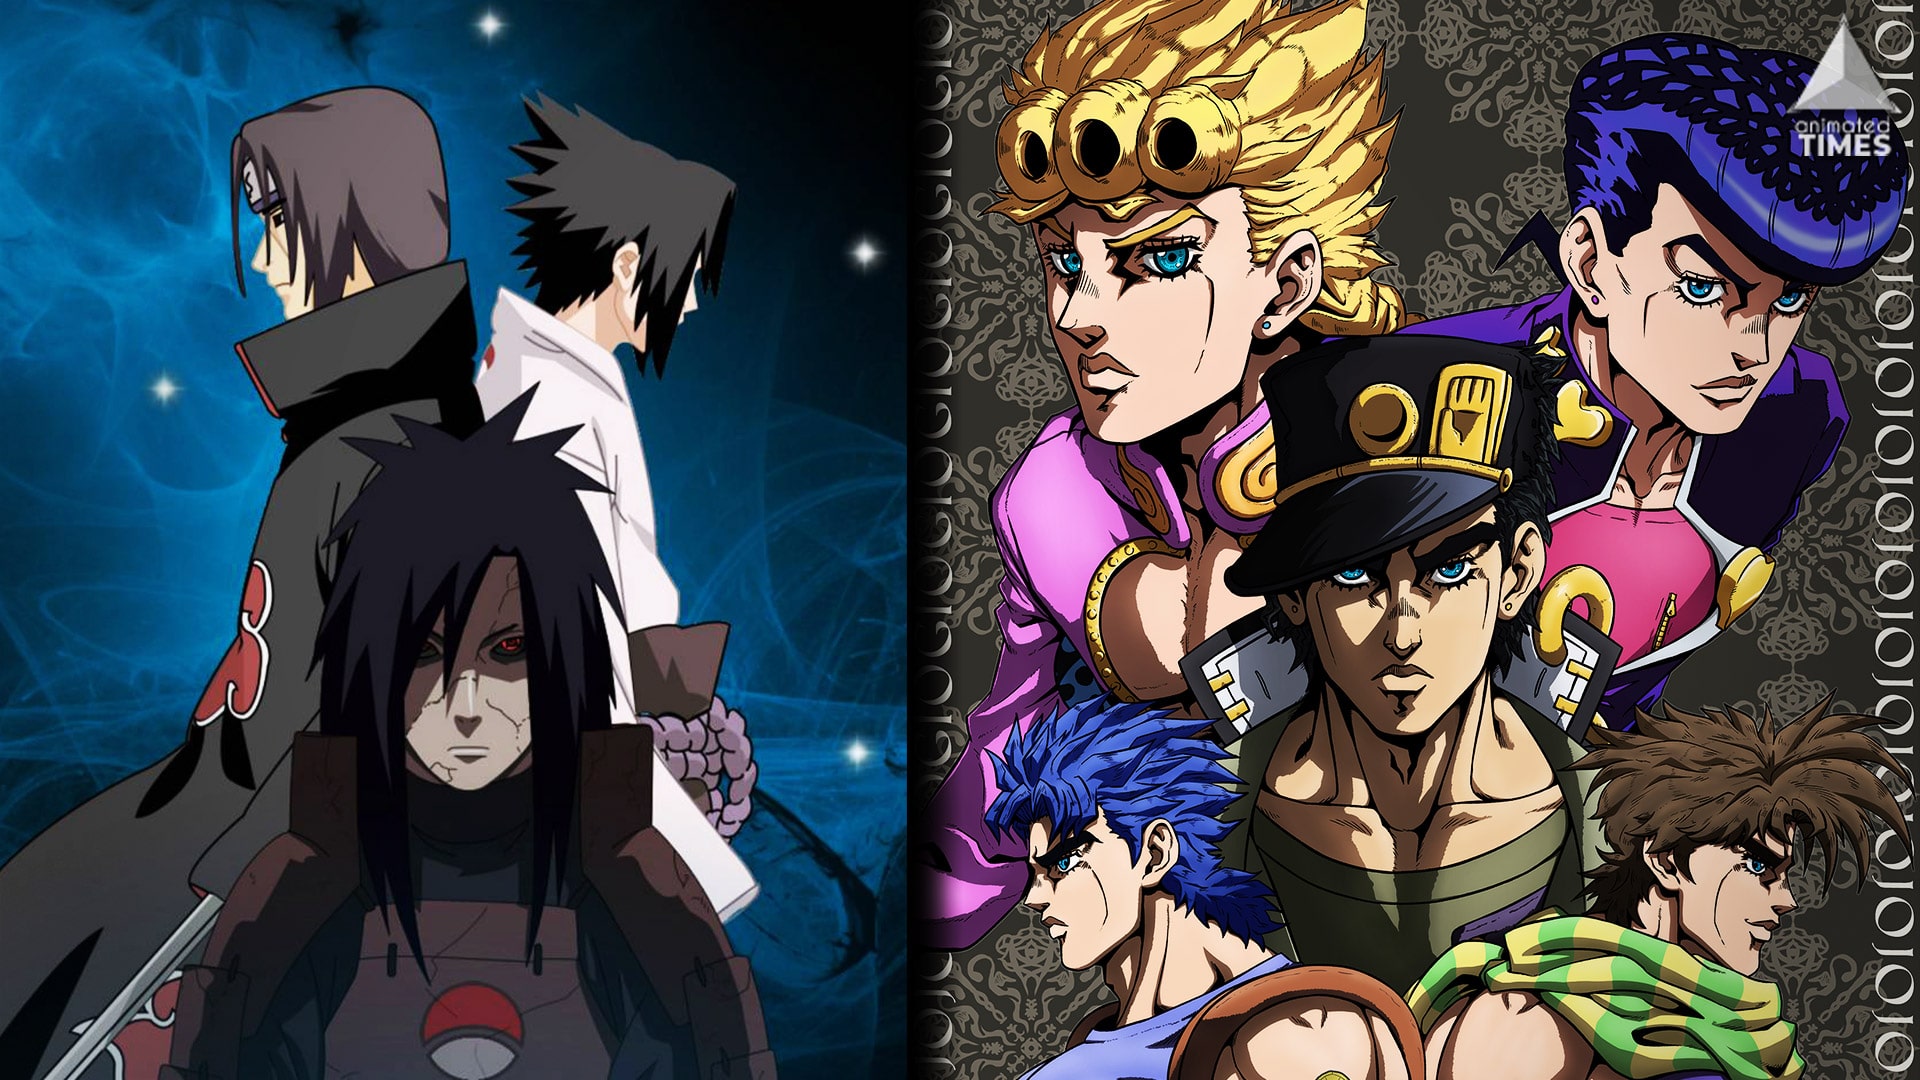 HD wallpaper: Anime, The Last: Naruto the Movie, Ōtsutsuki Clan | Wallpaper  Flare